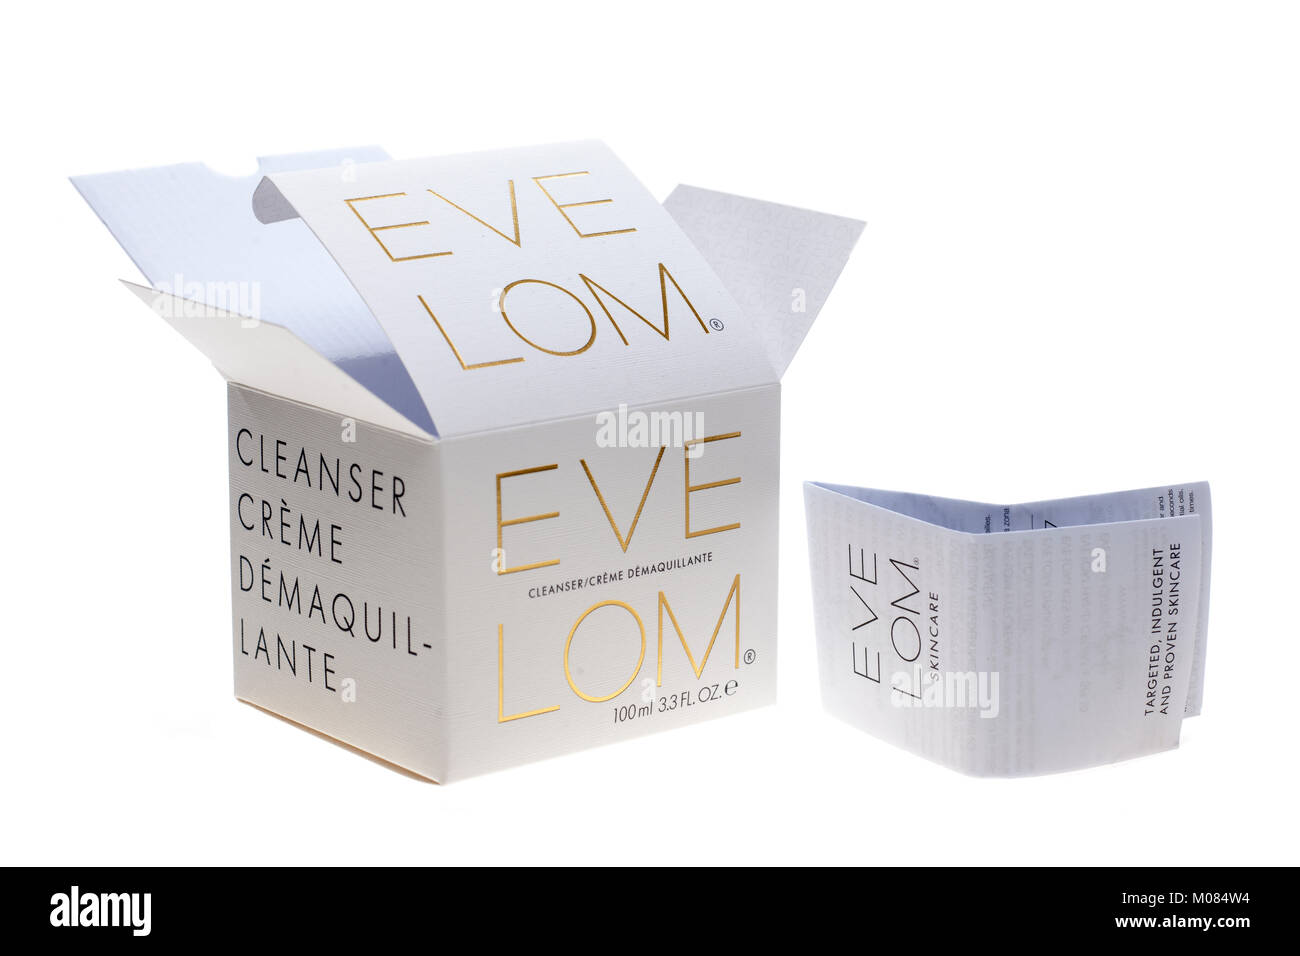 Eve Lom cleanser trucco etichetta e casella Foto Stock